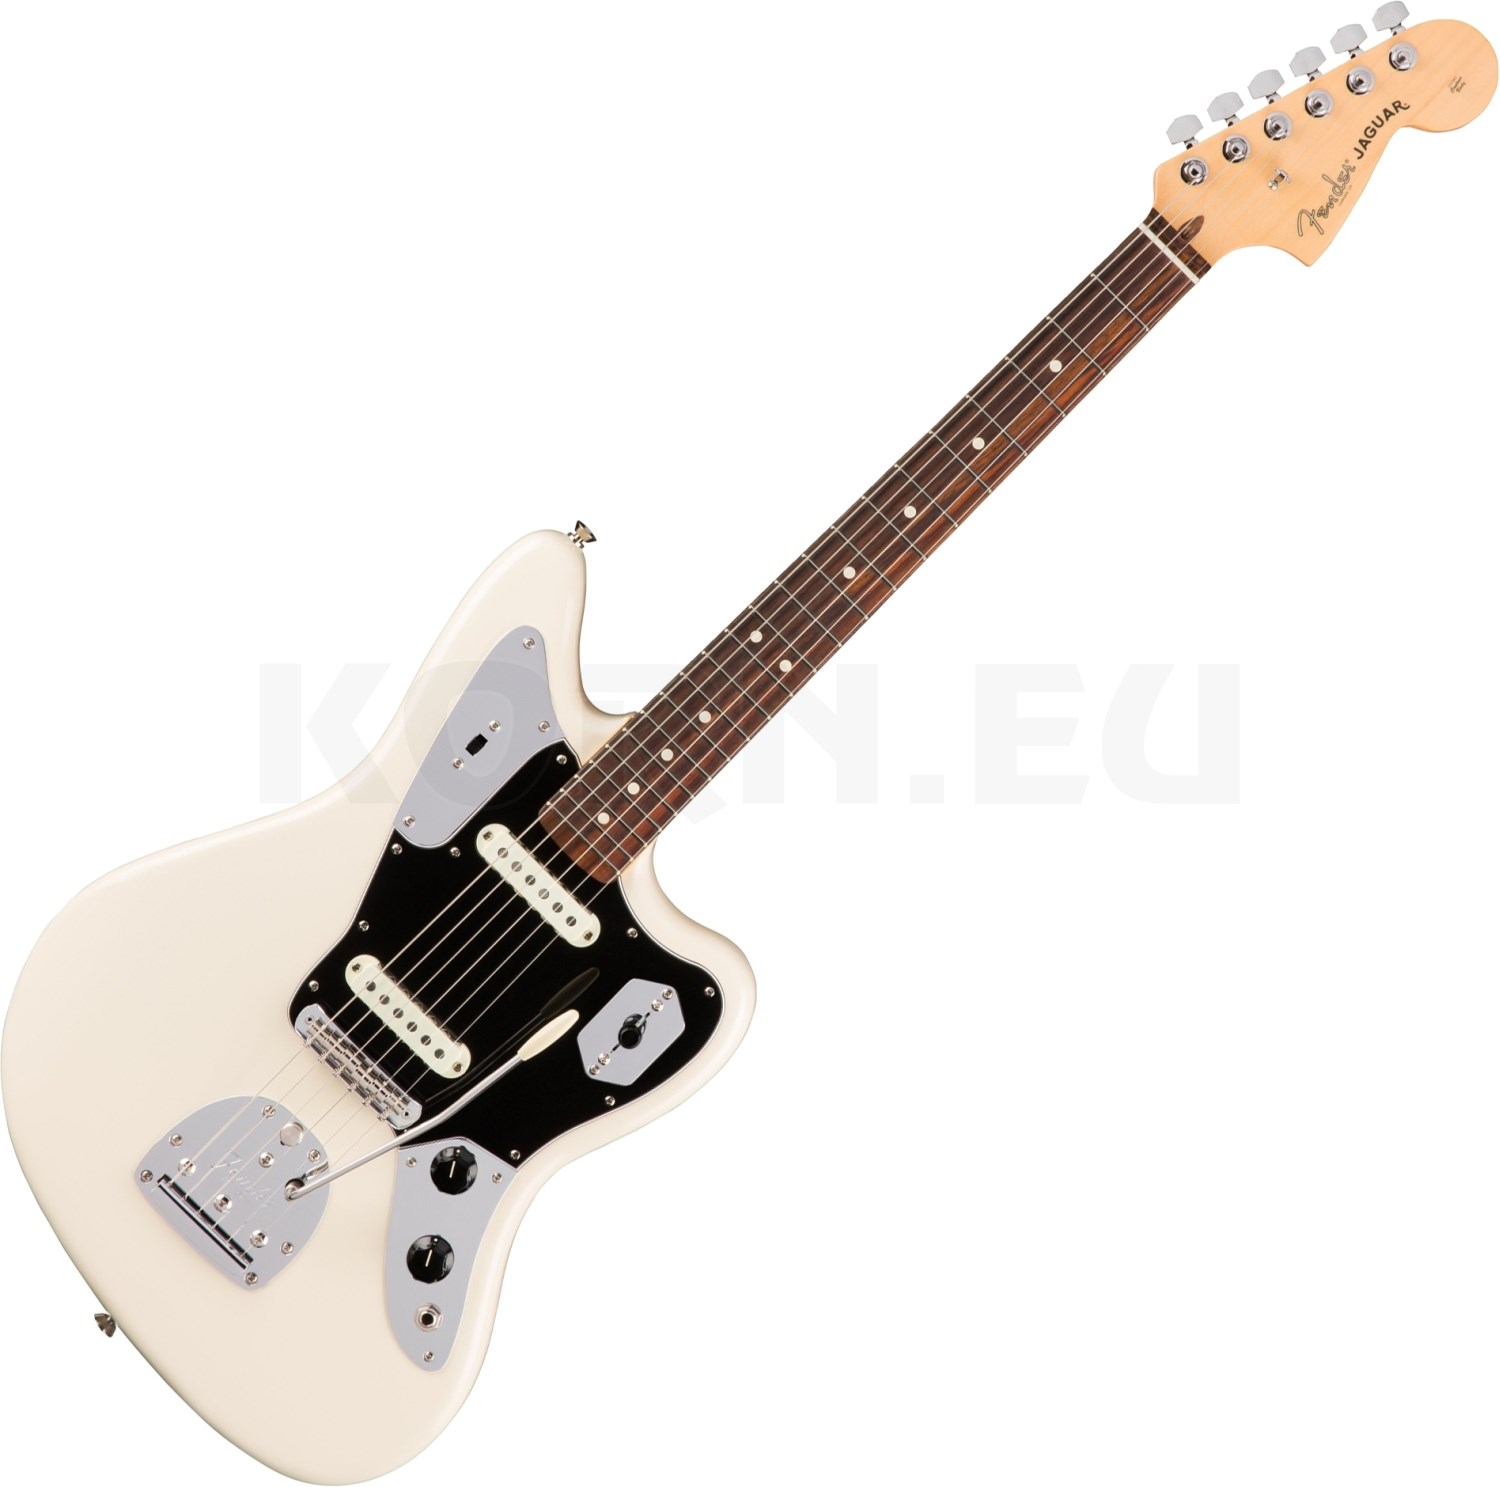 68750円 ついに再販開始 Fender american professional Jaguar